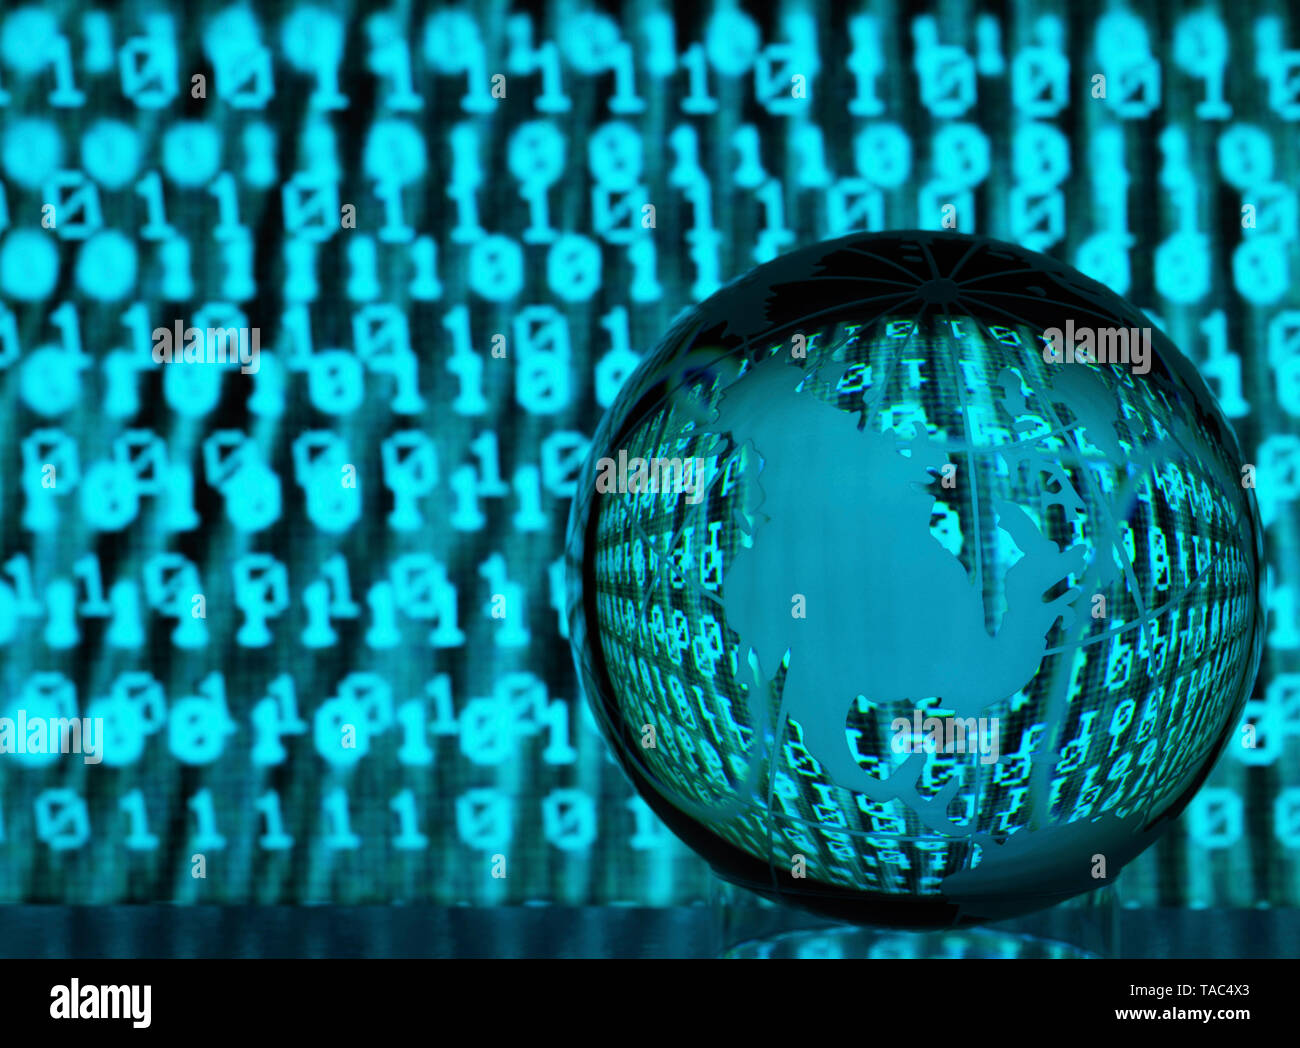 Cyber-criminalité mondiale, illustrant le globe de verre avec nous les réflexions d'un cyber-attaque infectés Banque D'Images